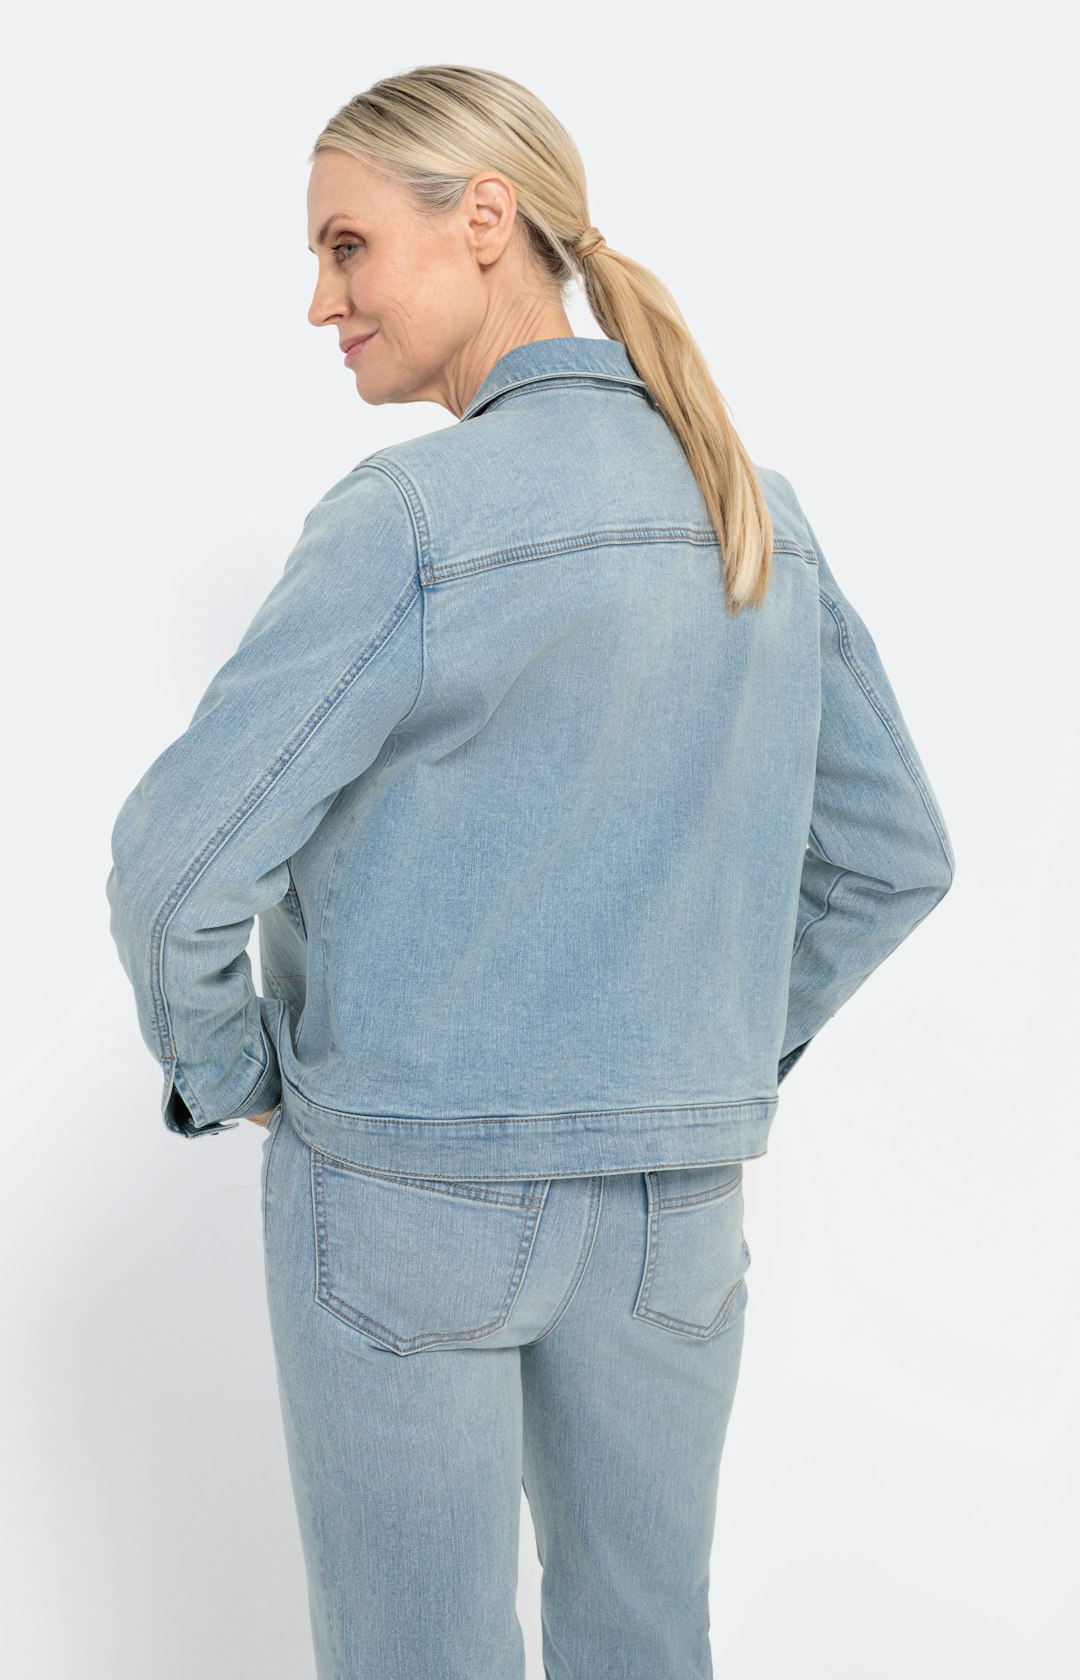 Jeansjacke mit aufgesetzten Taschen